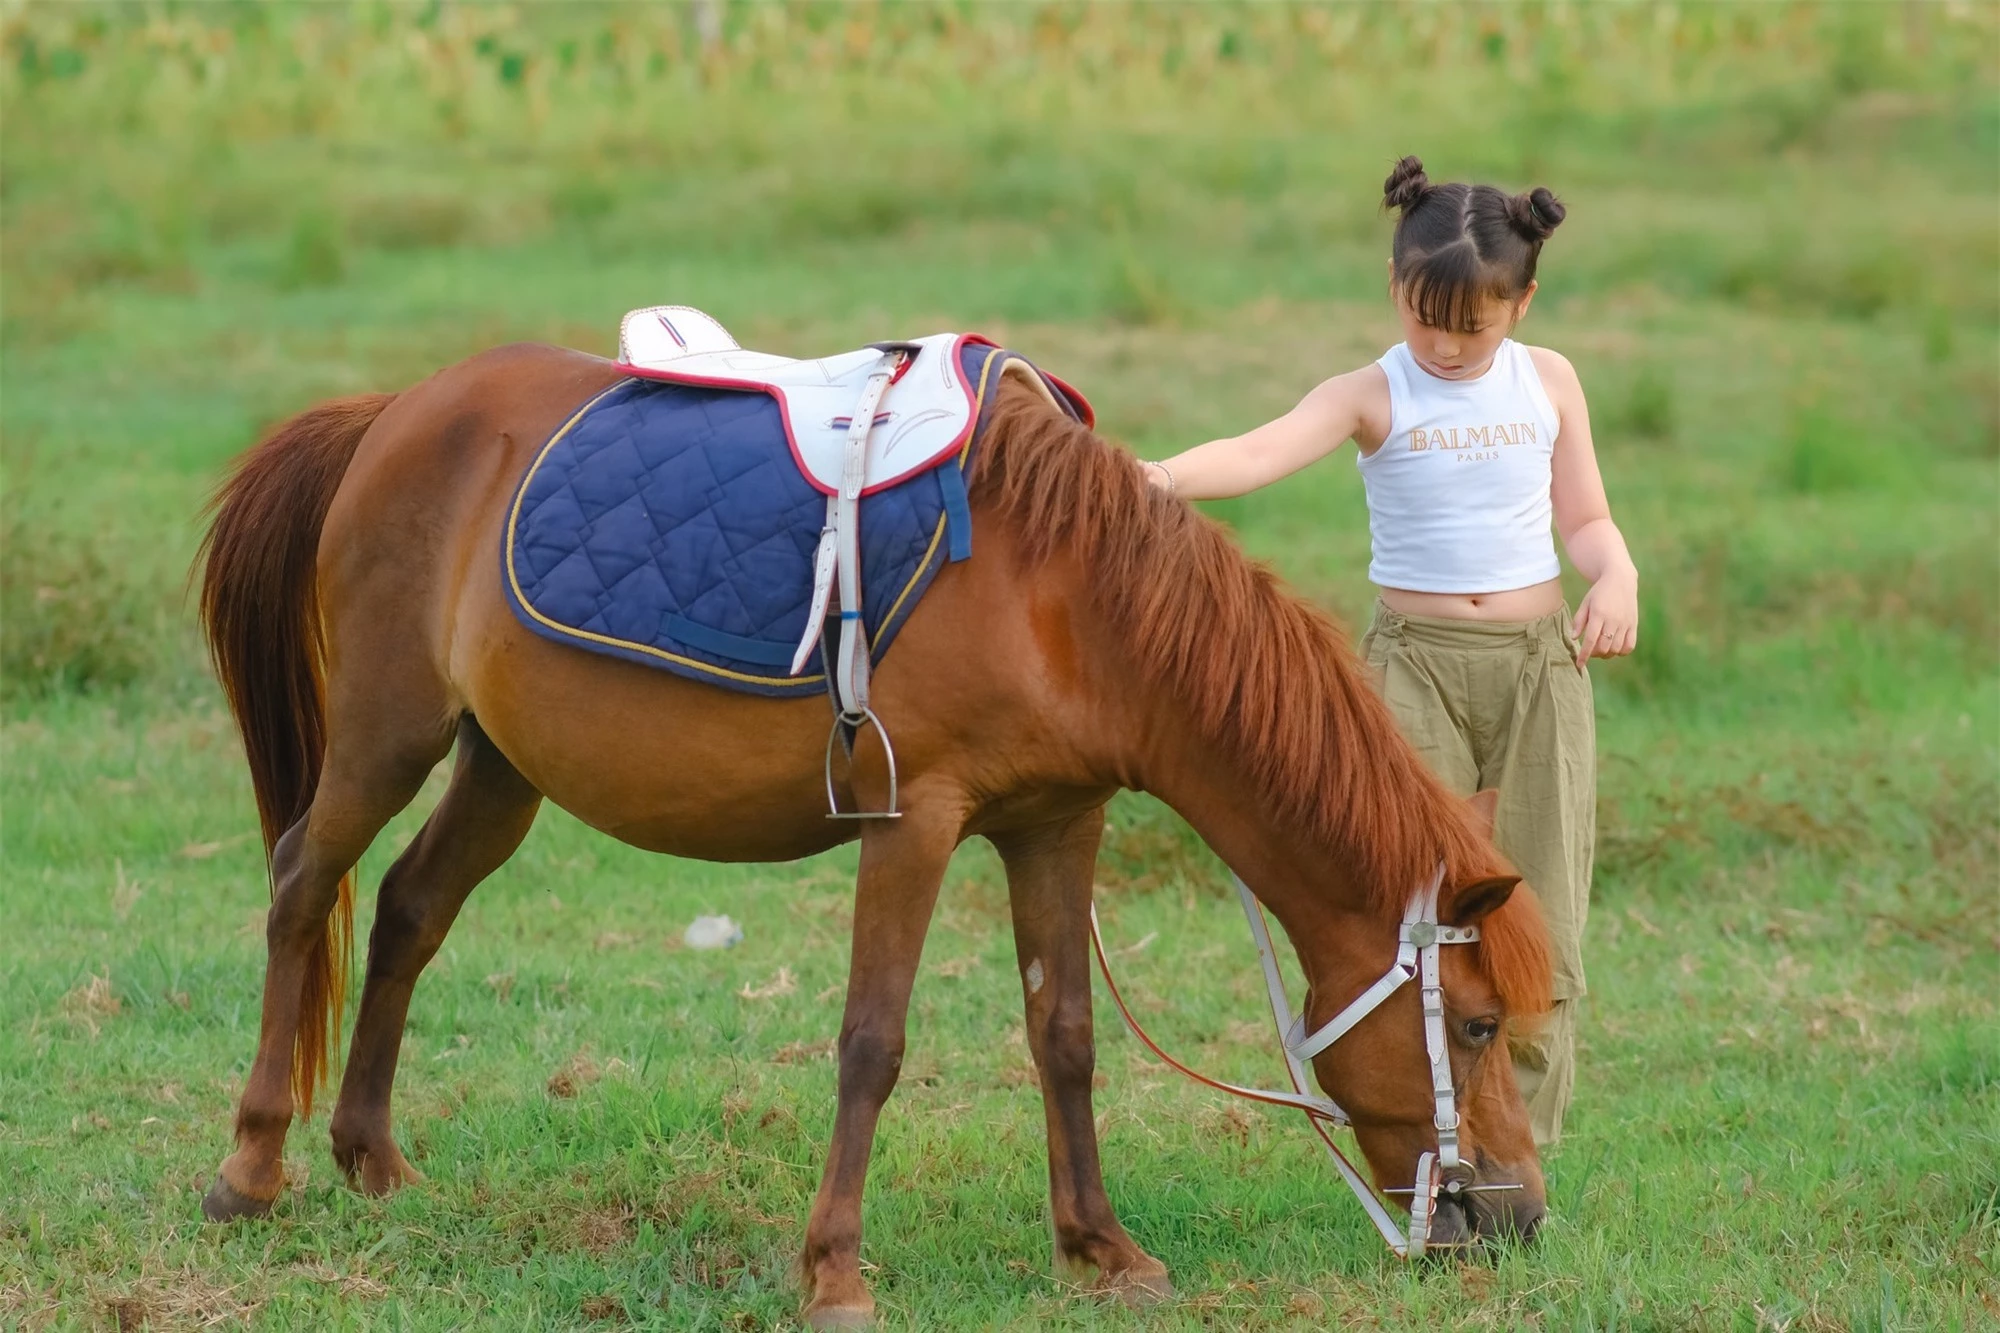 Bé gái 9 tuổi cưỡi ngựa phi nước đại, thần thái khiến người xem không thể rời mắt - Ảnh 1.